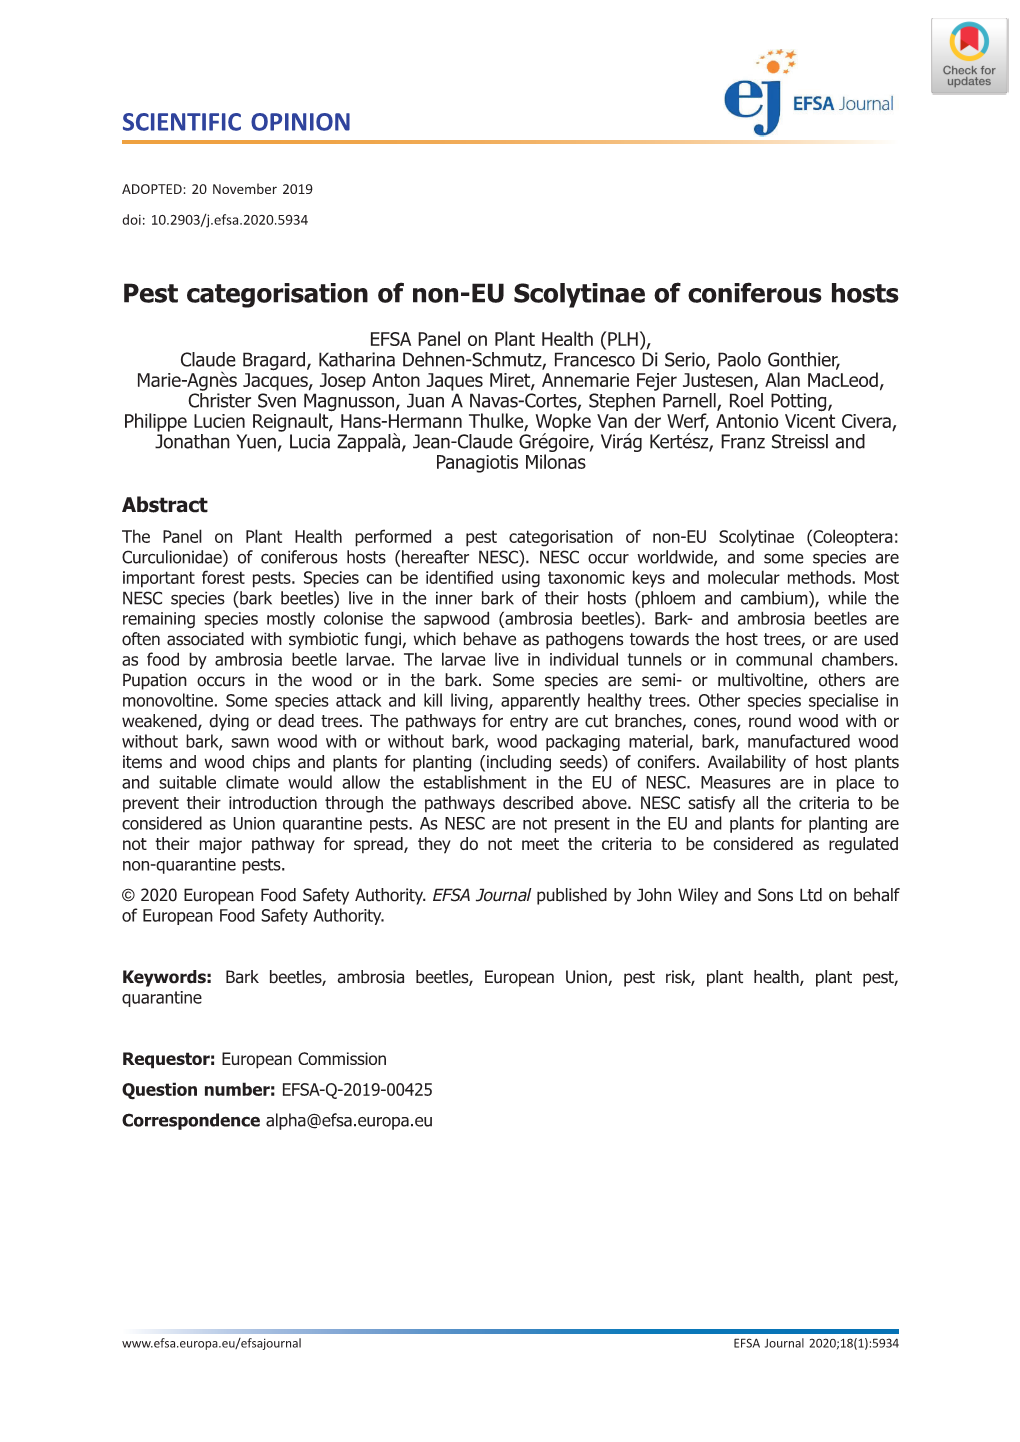 Pest Categorisation of Non‐EU Scolytinae of Coniferous Hosts